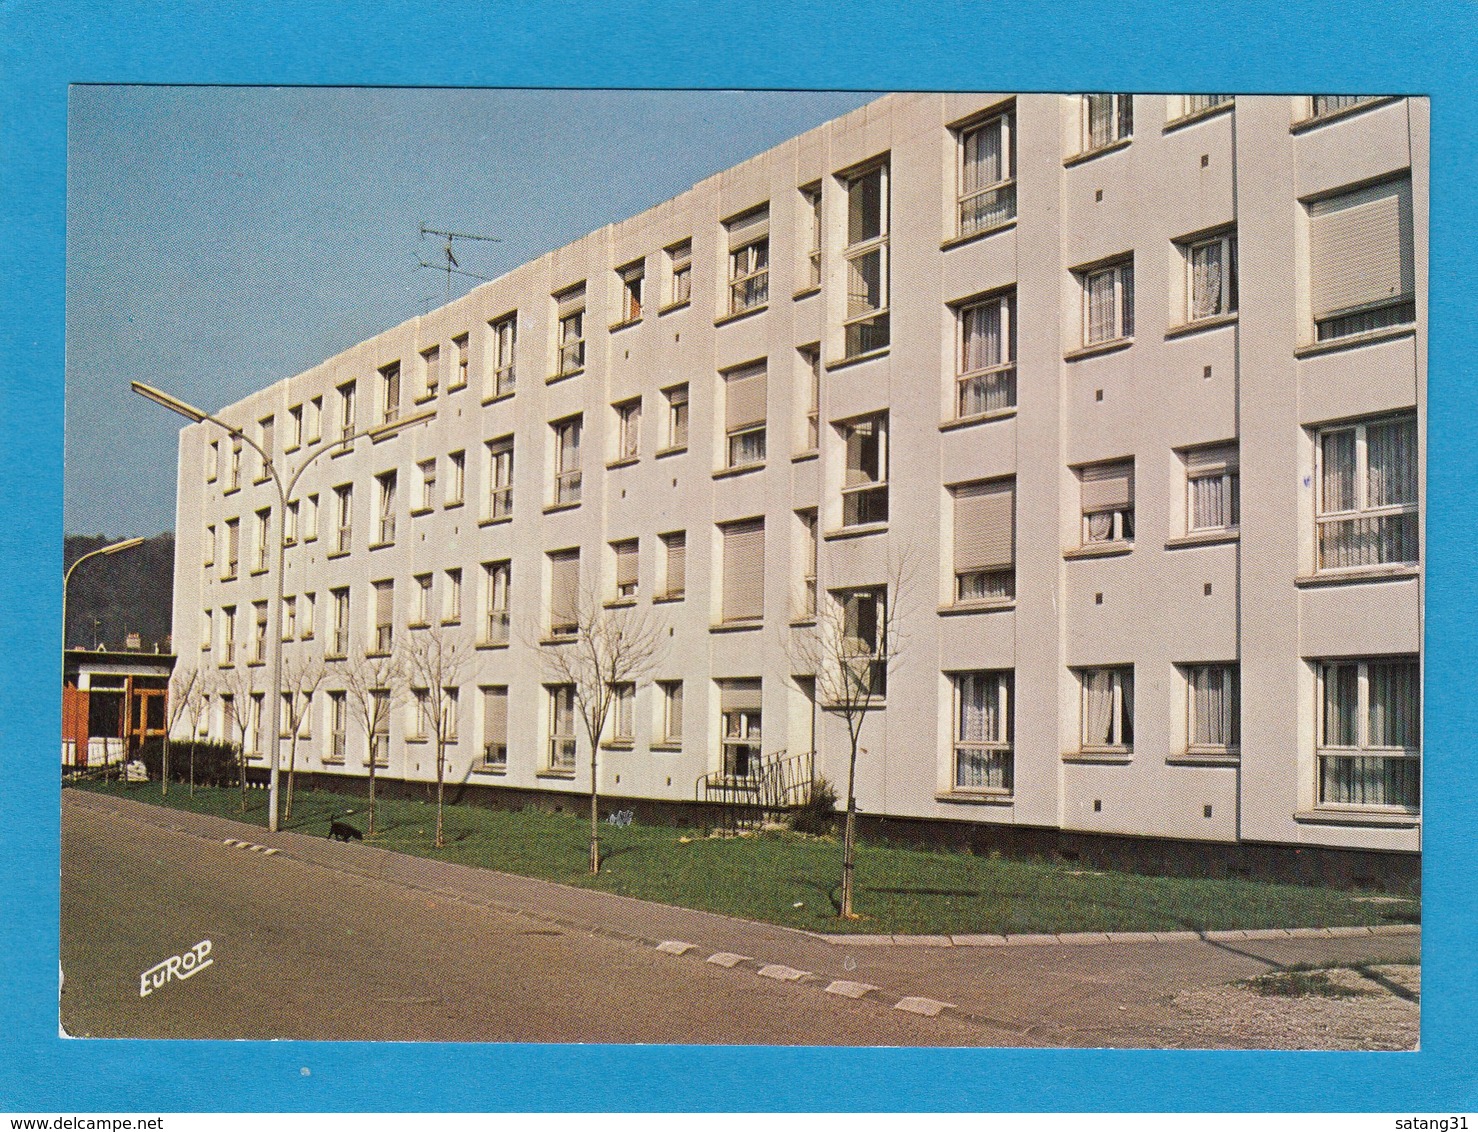 CARTE POSTALE AVEC VIGNETTE D'AFFRANCHISSEMENT DE JOEUF. - 1969 Montgeron – Weißes Papier – Frama/Satas